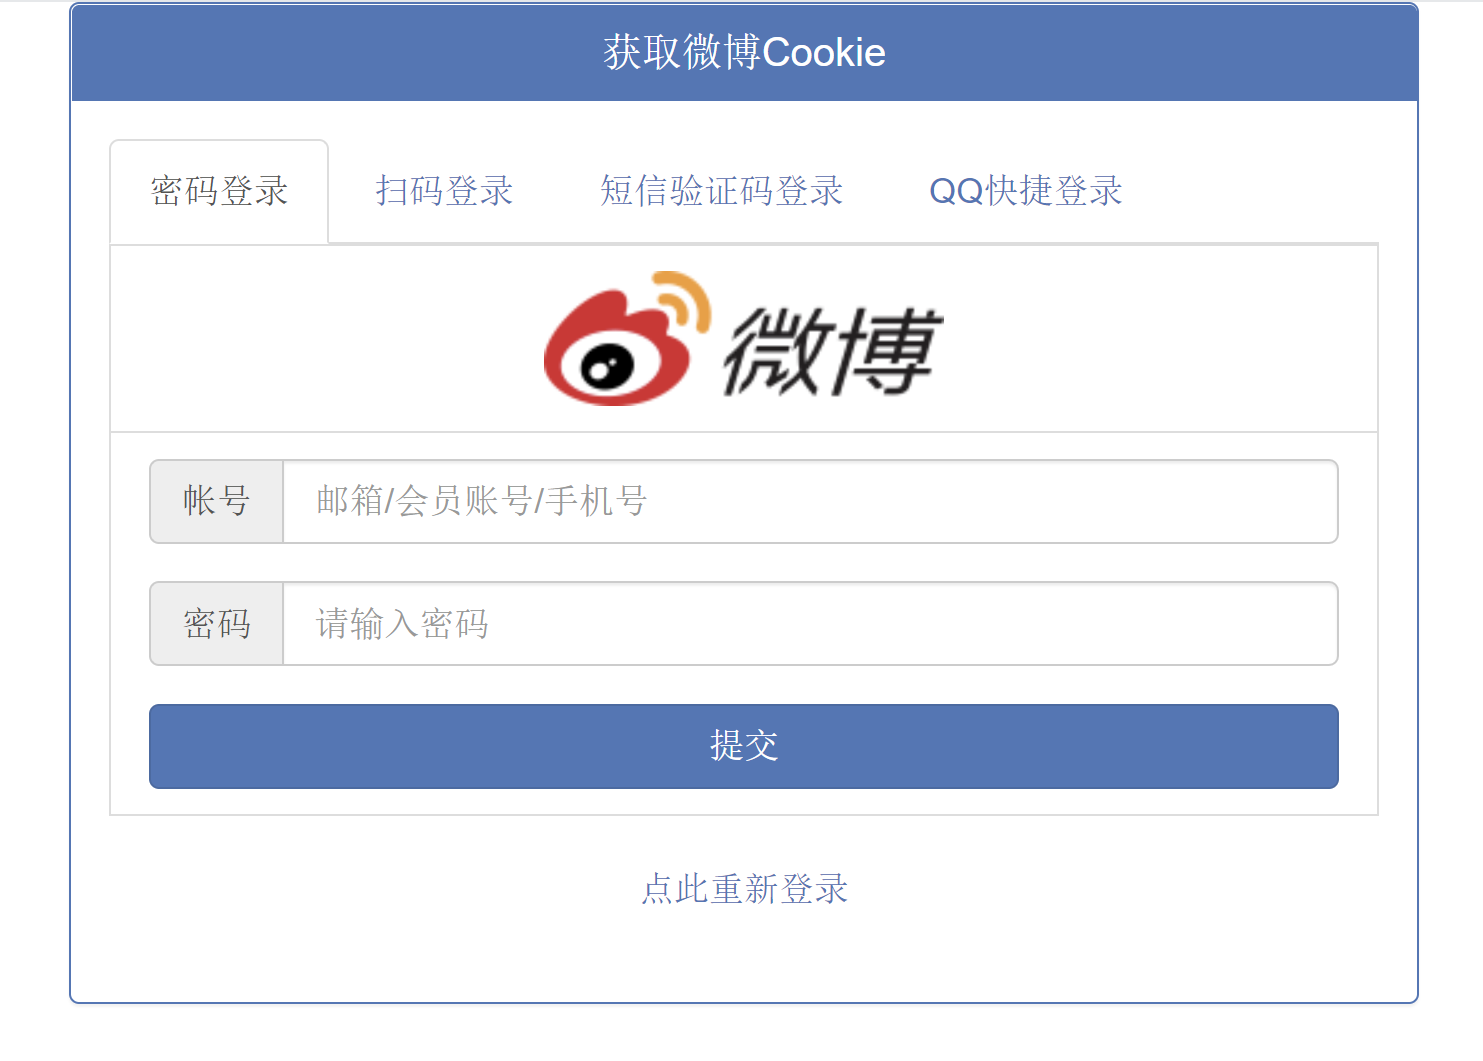 微博快捷登录CK，在线获取微博Cookie源码 支持4种登录方式|鲸宜居资源网